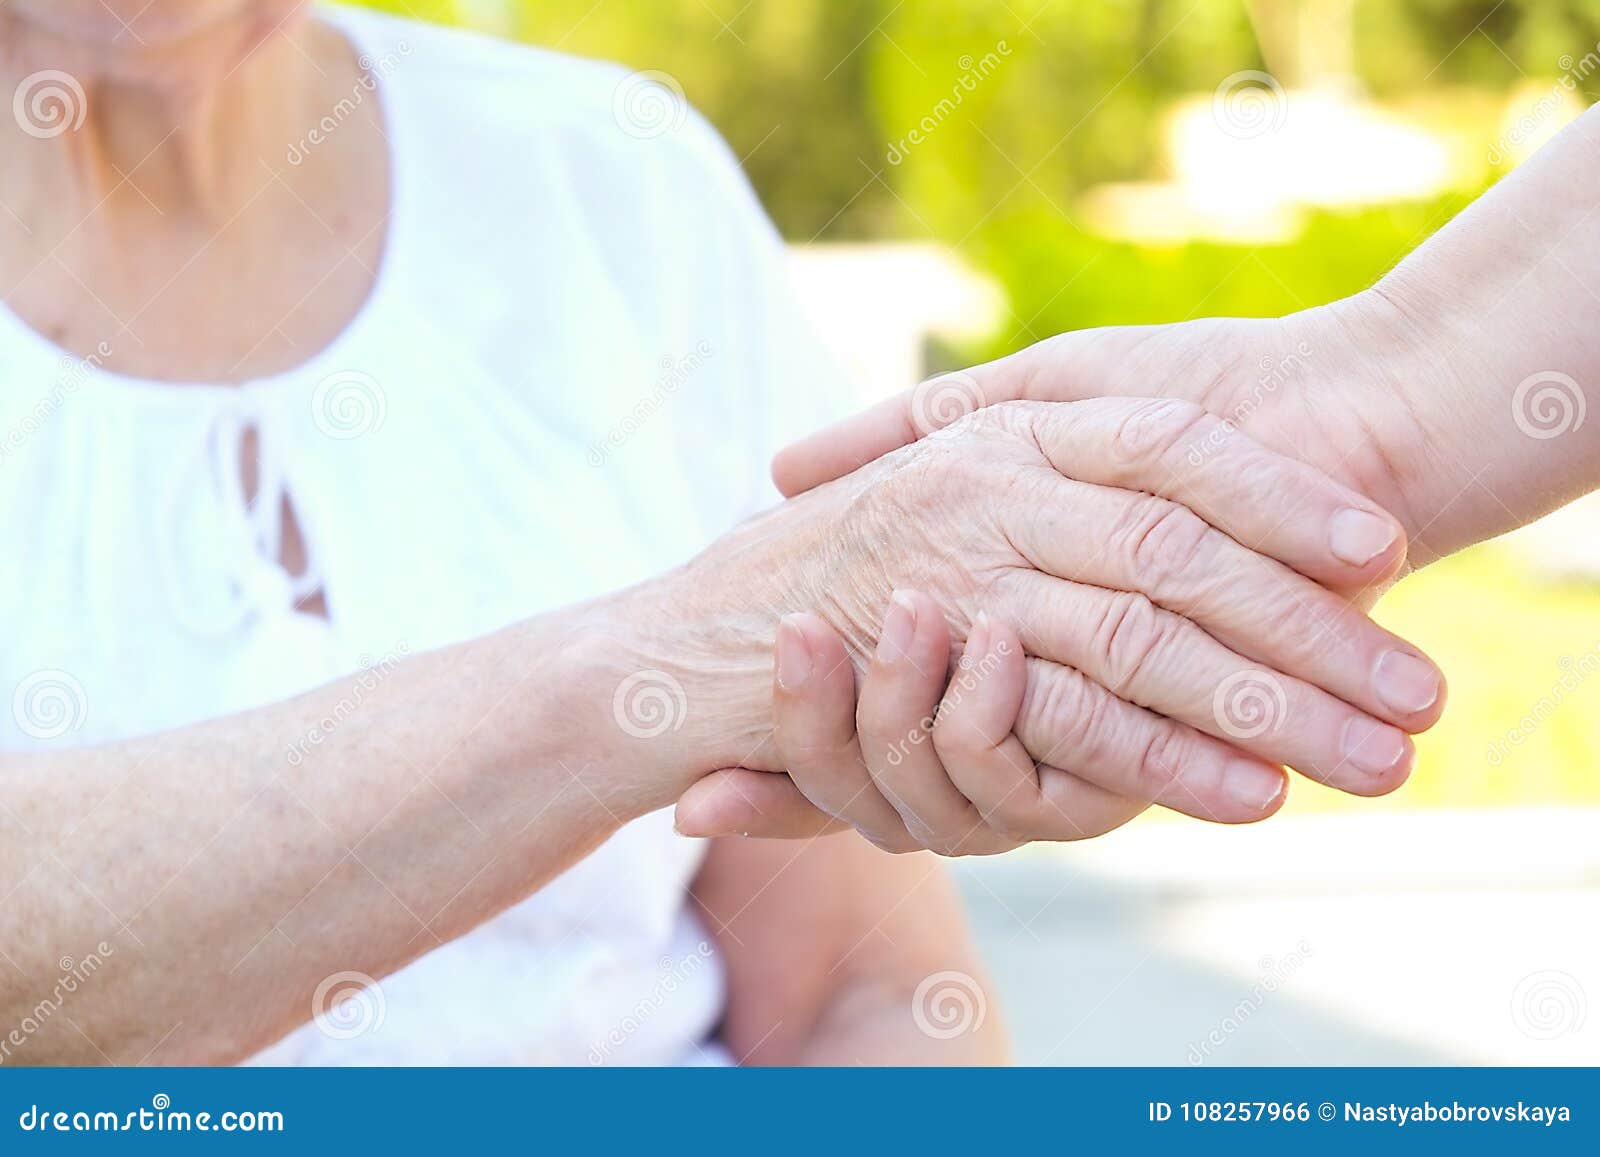 Пожилые держатся за руки. Руки пожилого и молодого. Руки пожилых и молодых. Рука пожилого в руке молодого.